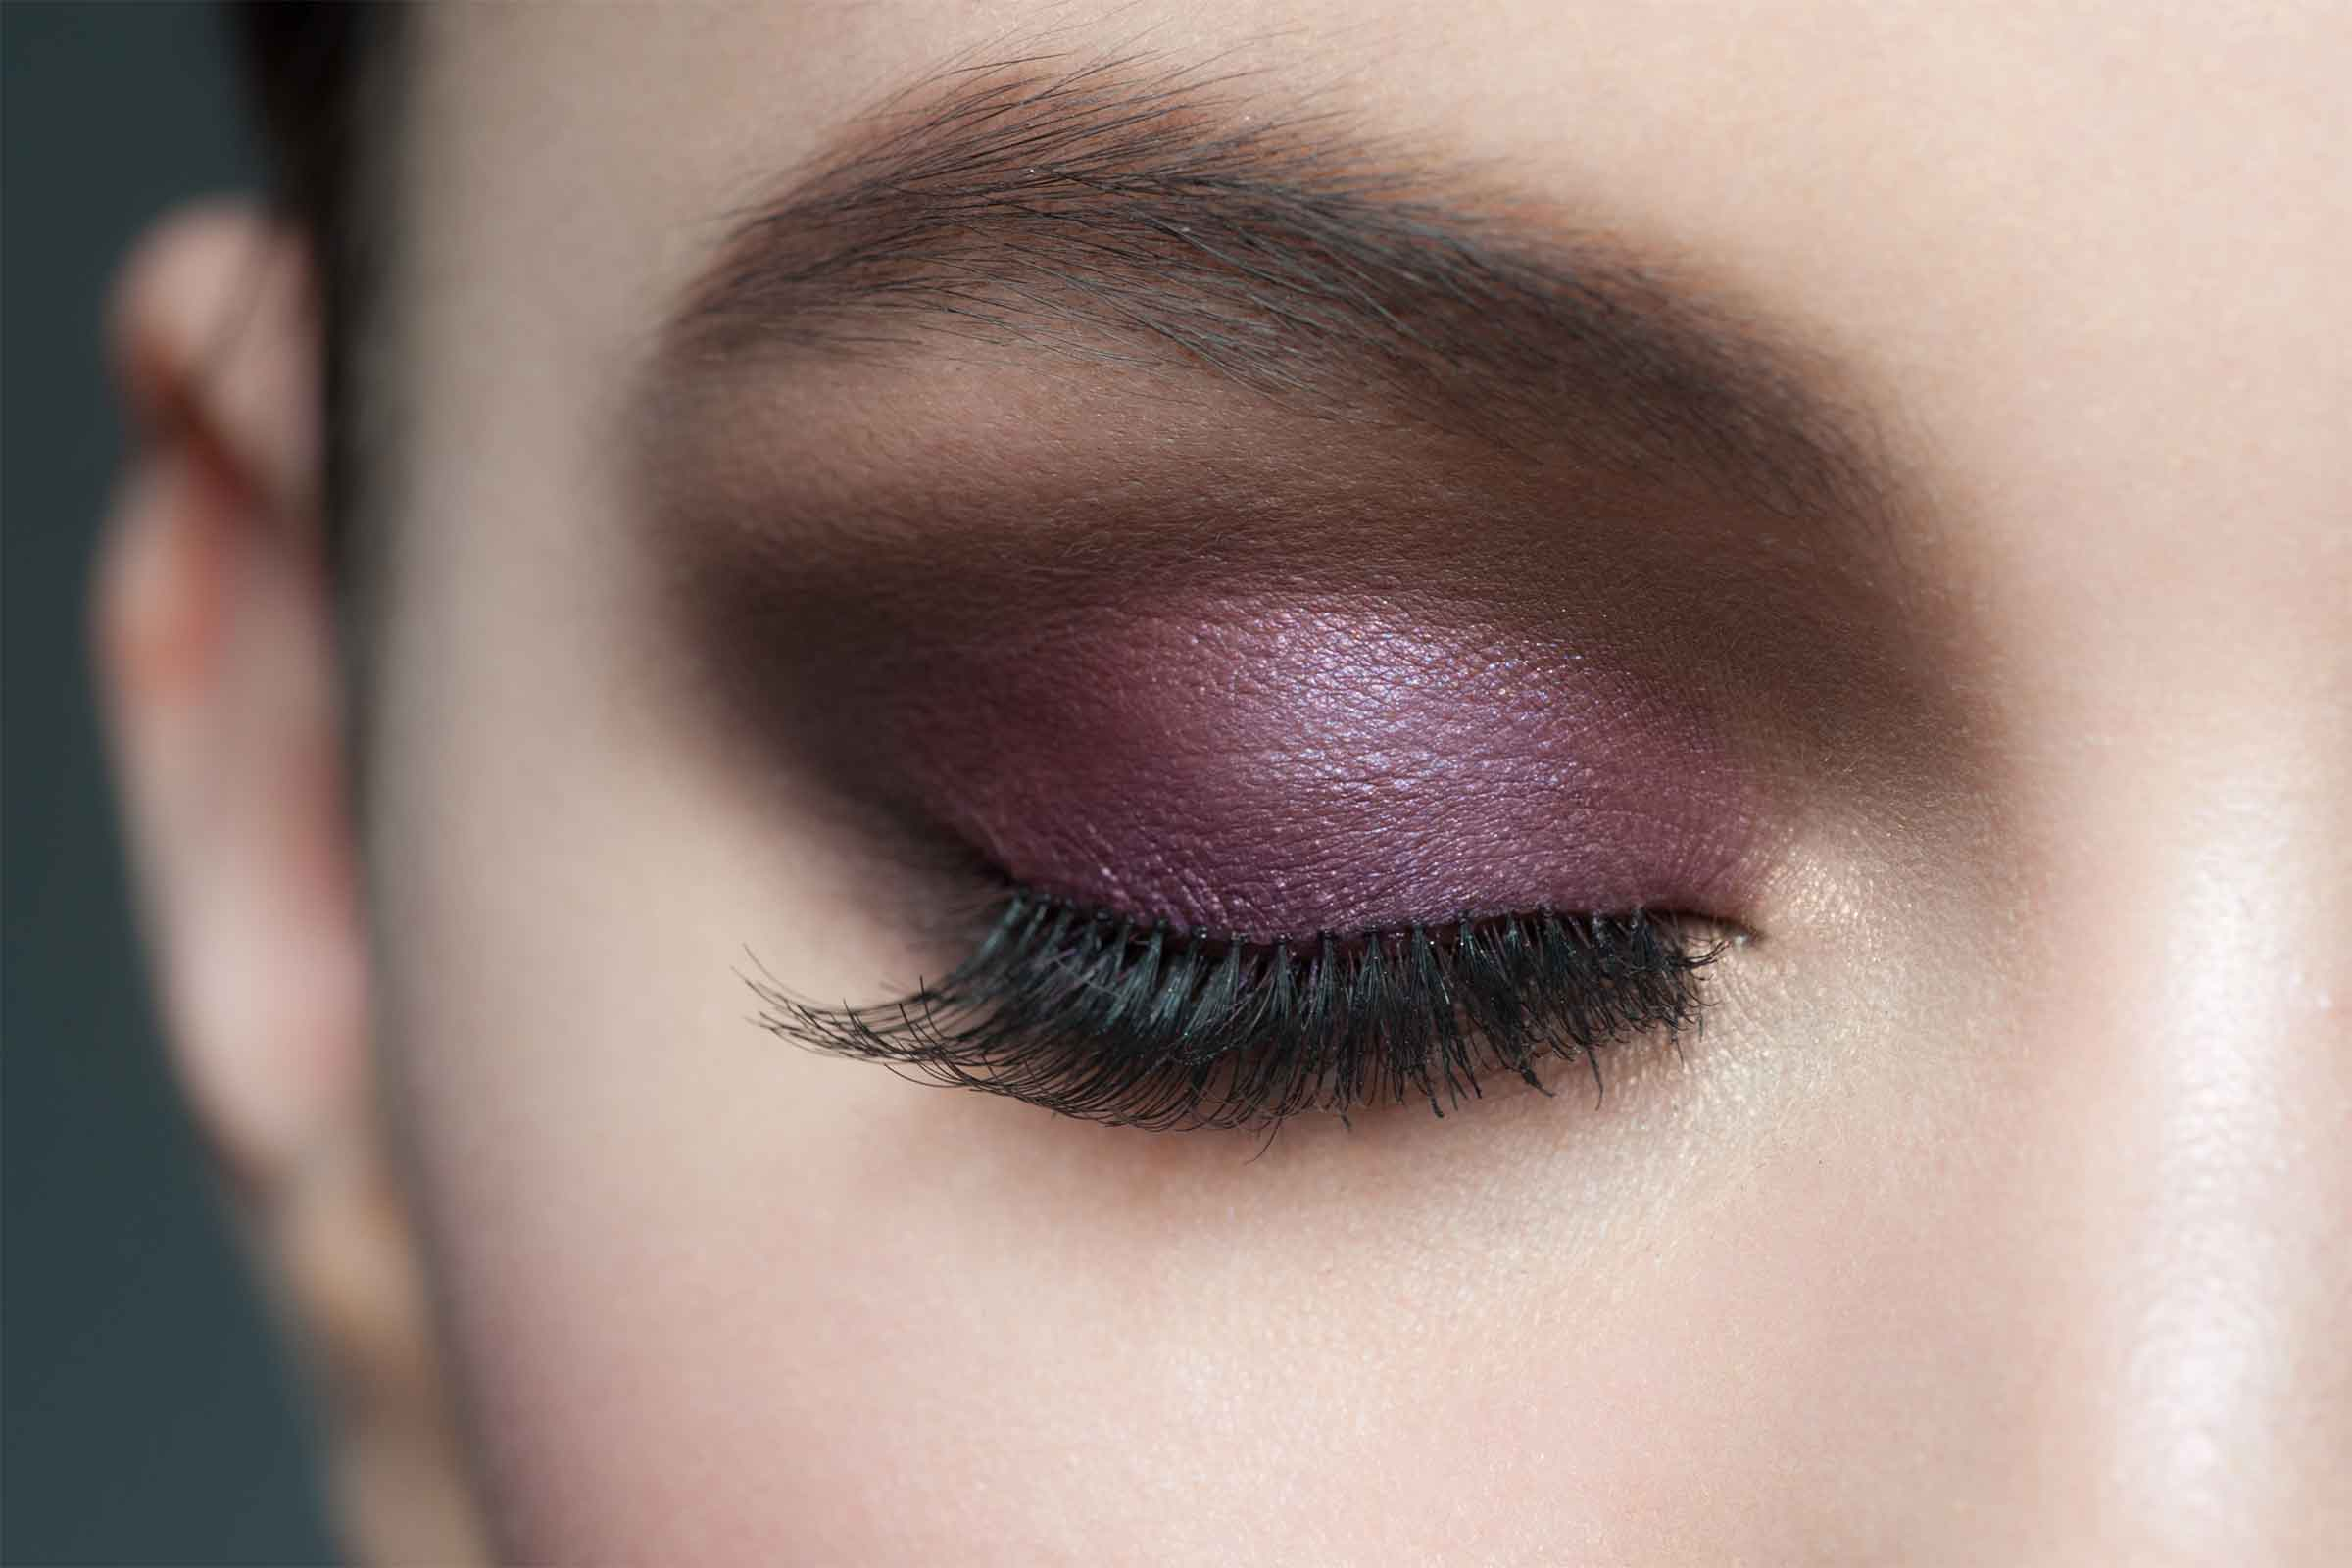 Purple Makeup Brown Eyes Eye Makeup Tips 7 Ways To Make Your Eyes Pop Readers Digest